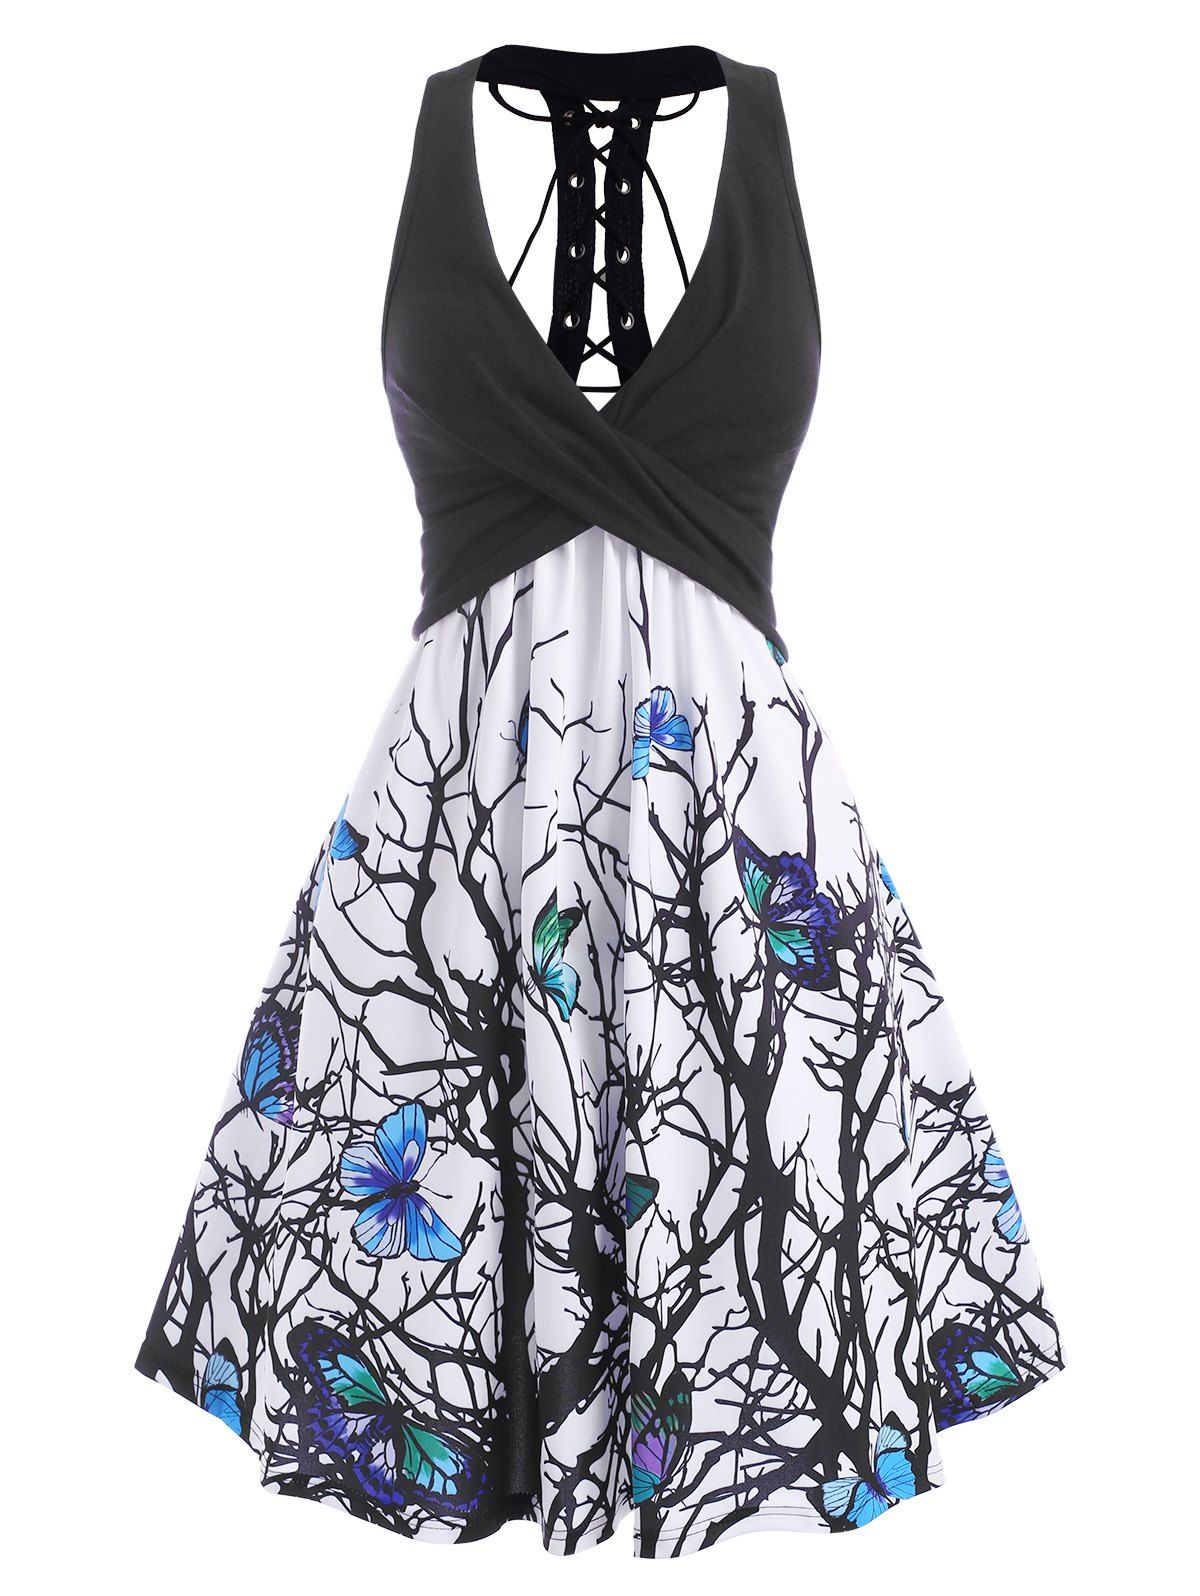 Branch Butterfly Print Lace Up Empire Waist Dress - BLACK XXXL